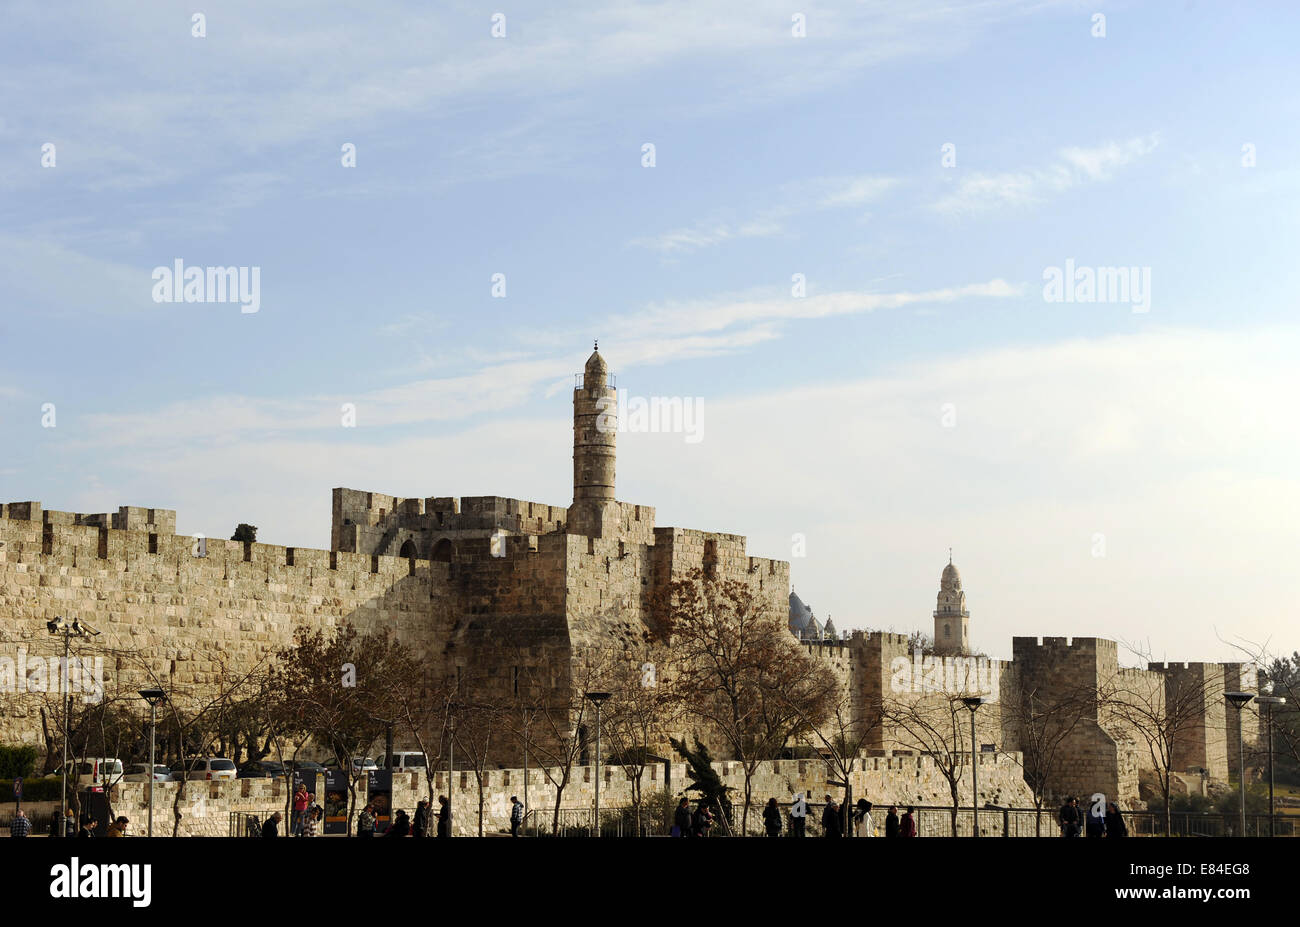 Israël. Jérusalem. Vieille Ville. Les murs de la ville et l'ancienne citadelle avec tour de David, 2e siècle avant J.-C.. Banque D'Images